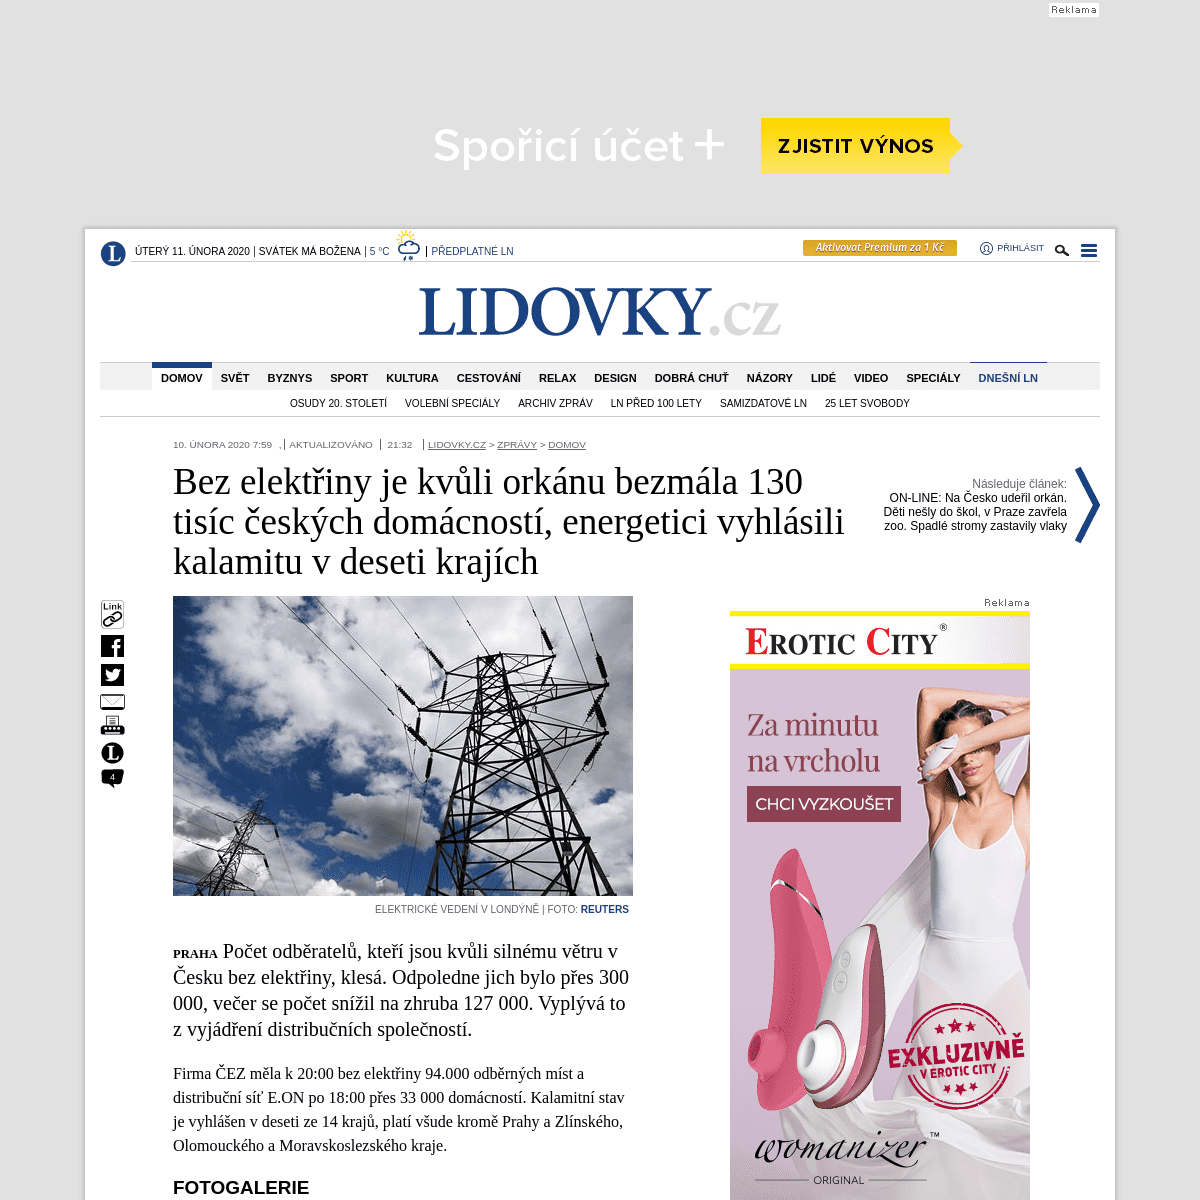 A complete backup of www.lidovky.cz/domov/v-cesku-je-kvuli-orkanu-100-tisic-domacnosti-bez-elektriny-nejhorsi-situace-je-ve-stre